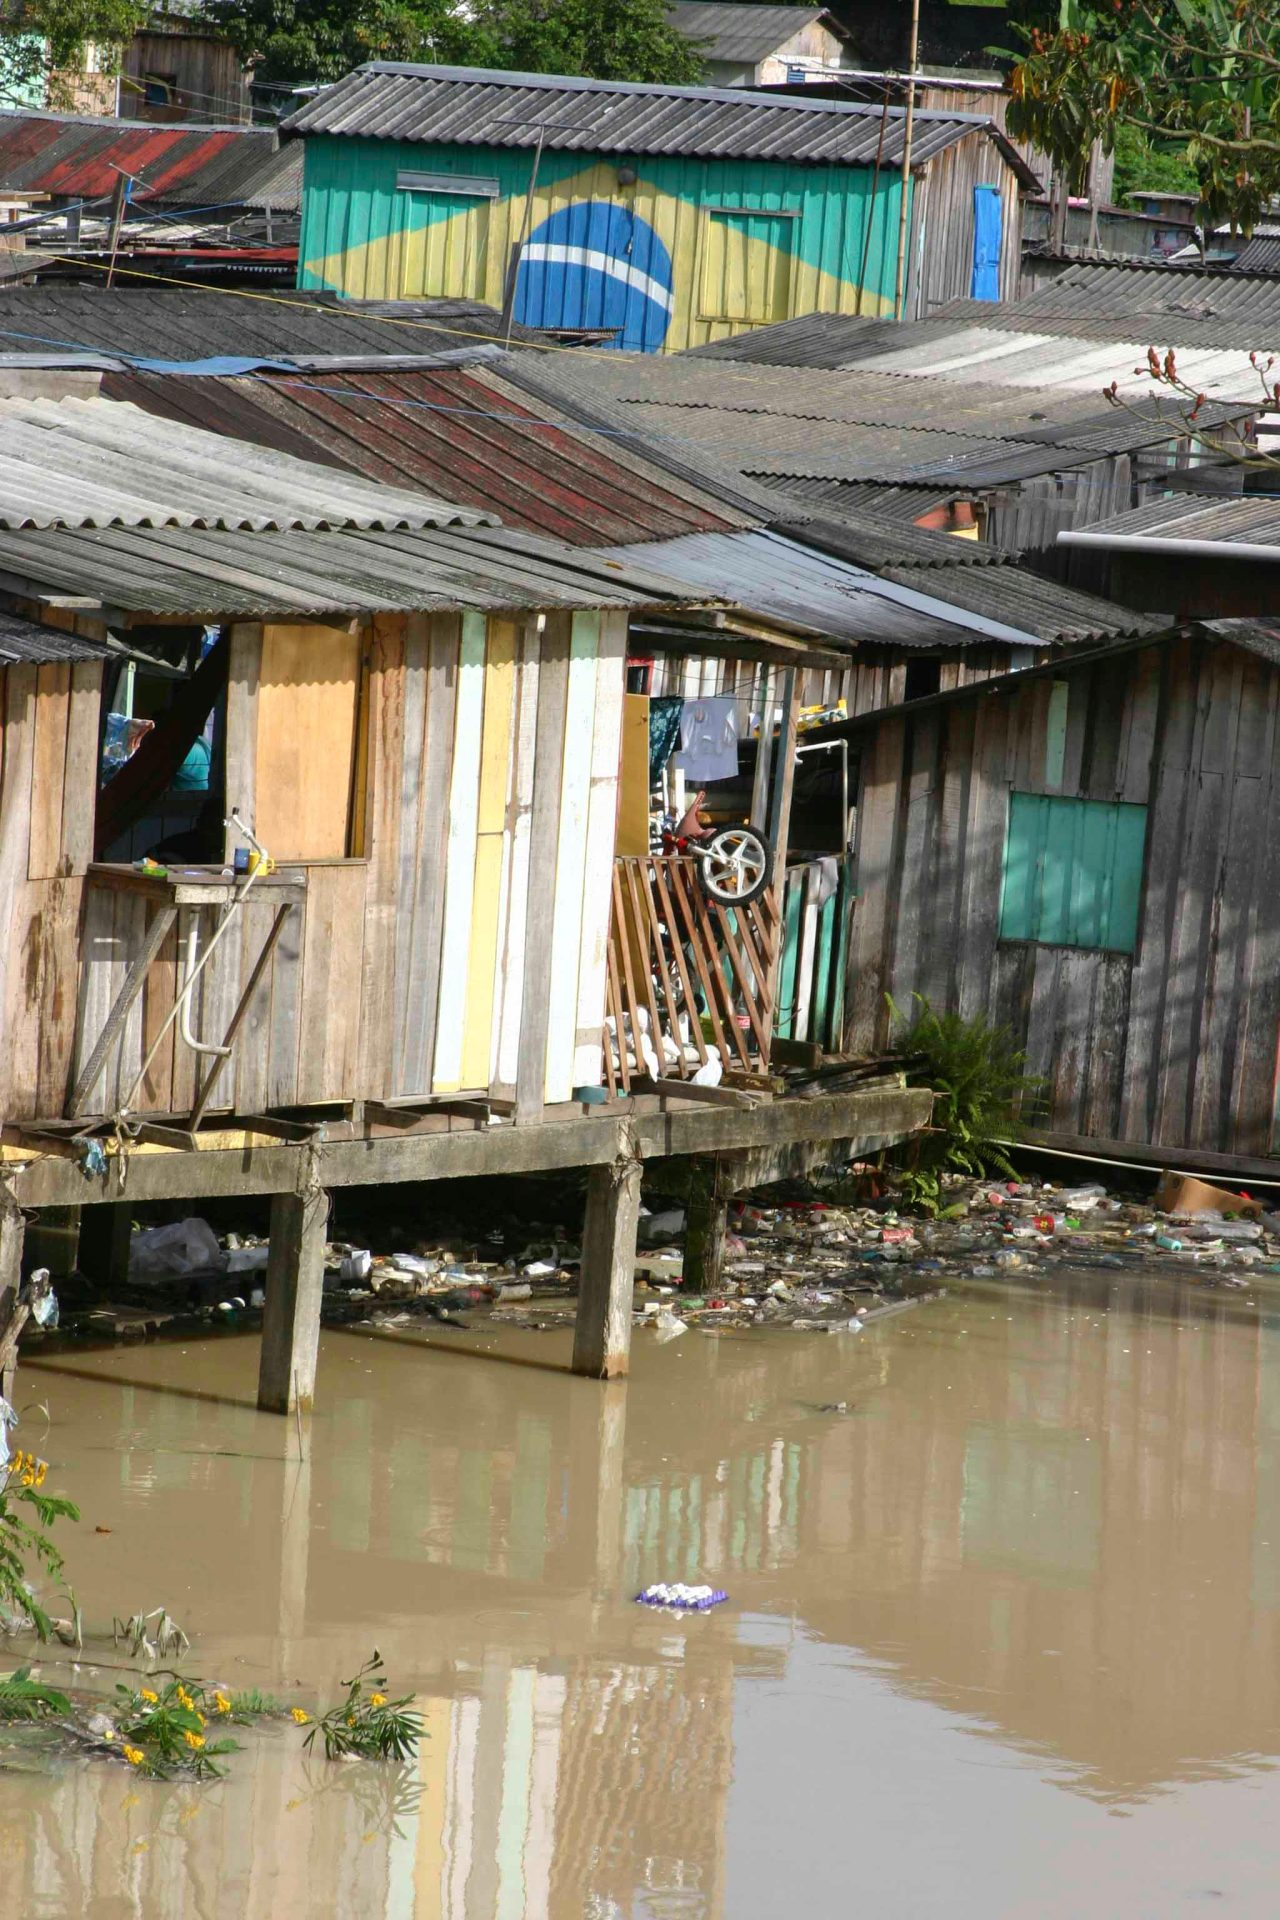 Pobreza extrema: imagem de palafitas em Manaus mostra situação de uma parcela da população - Foto: Alberto César Araújo/Estadão Conteúdo